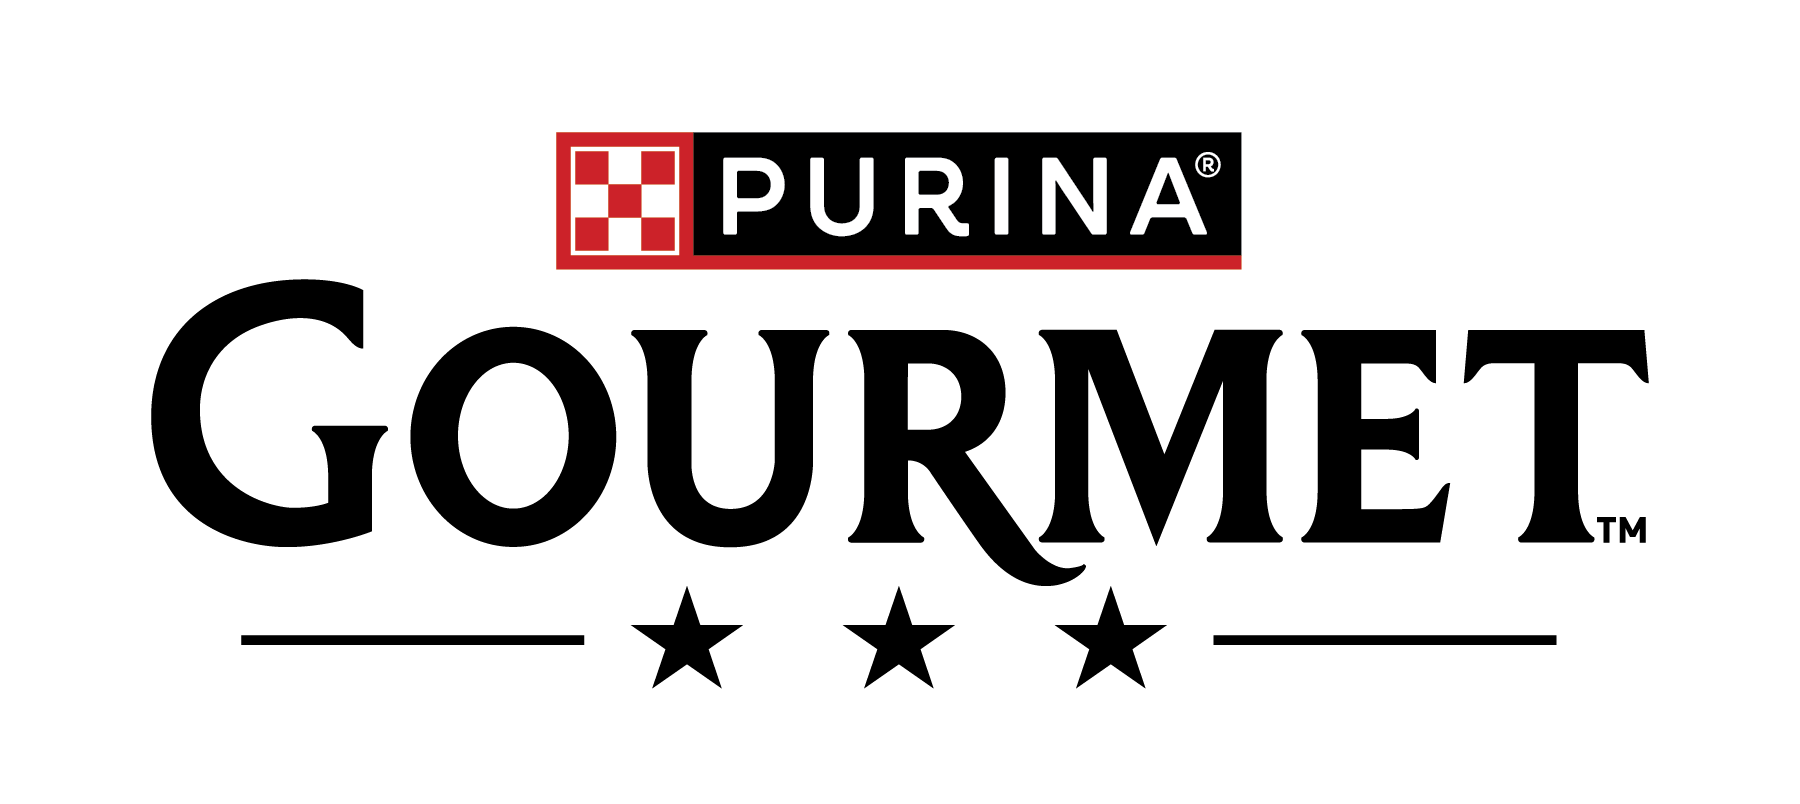 PURINA GOURMET